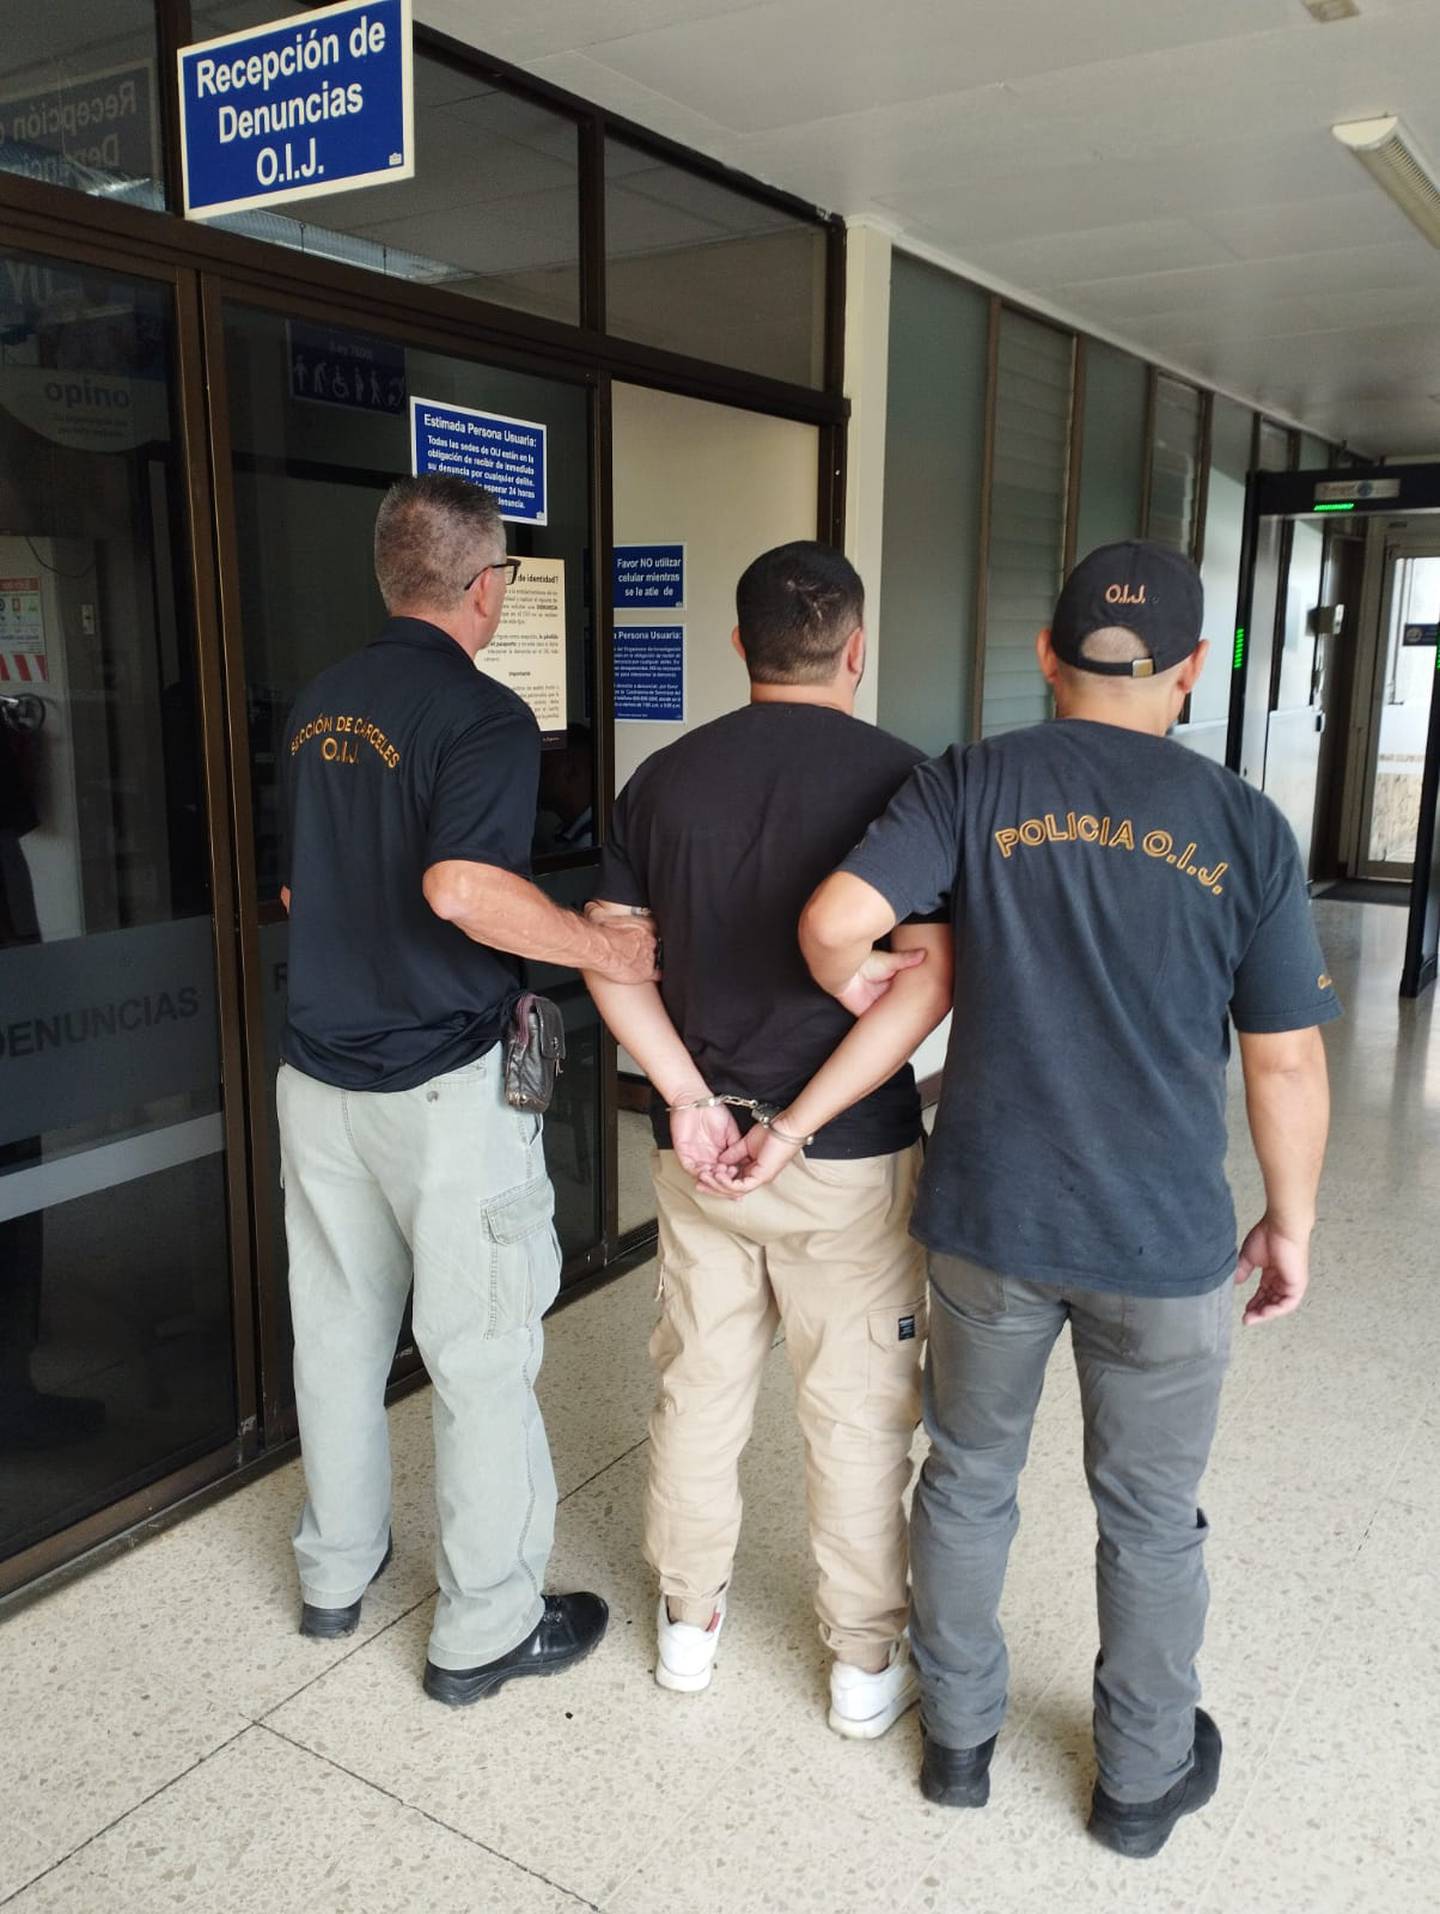 Una banda dedicada al robo de cable fue desarticulada por el Organismo de Investigación Judicial (OIJ)  los sospechosos son 13 personas que aparentemente operaban en Cartago y Zona Atlántica.